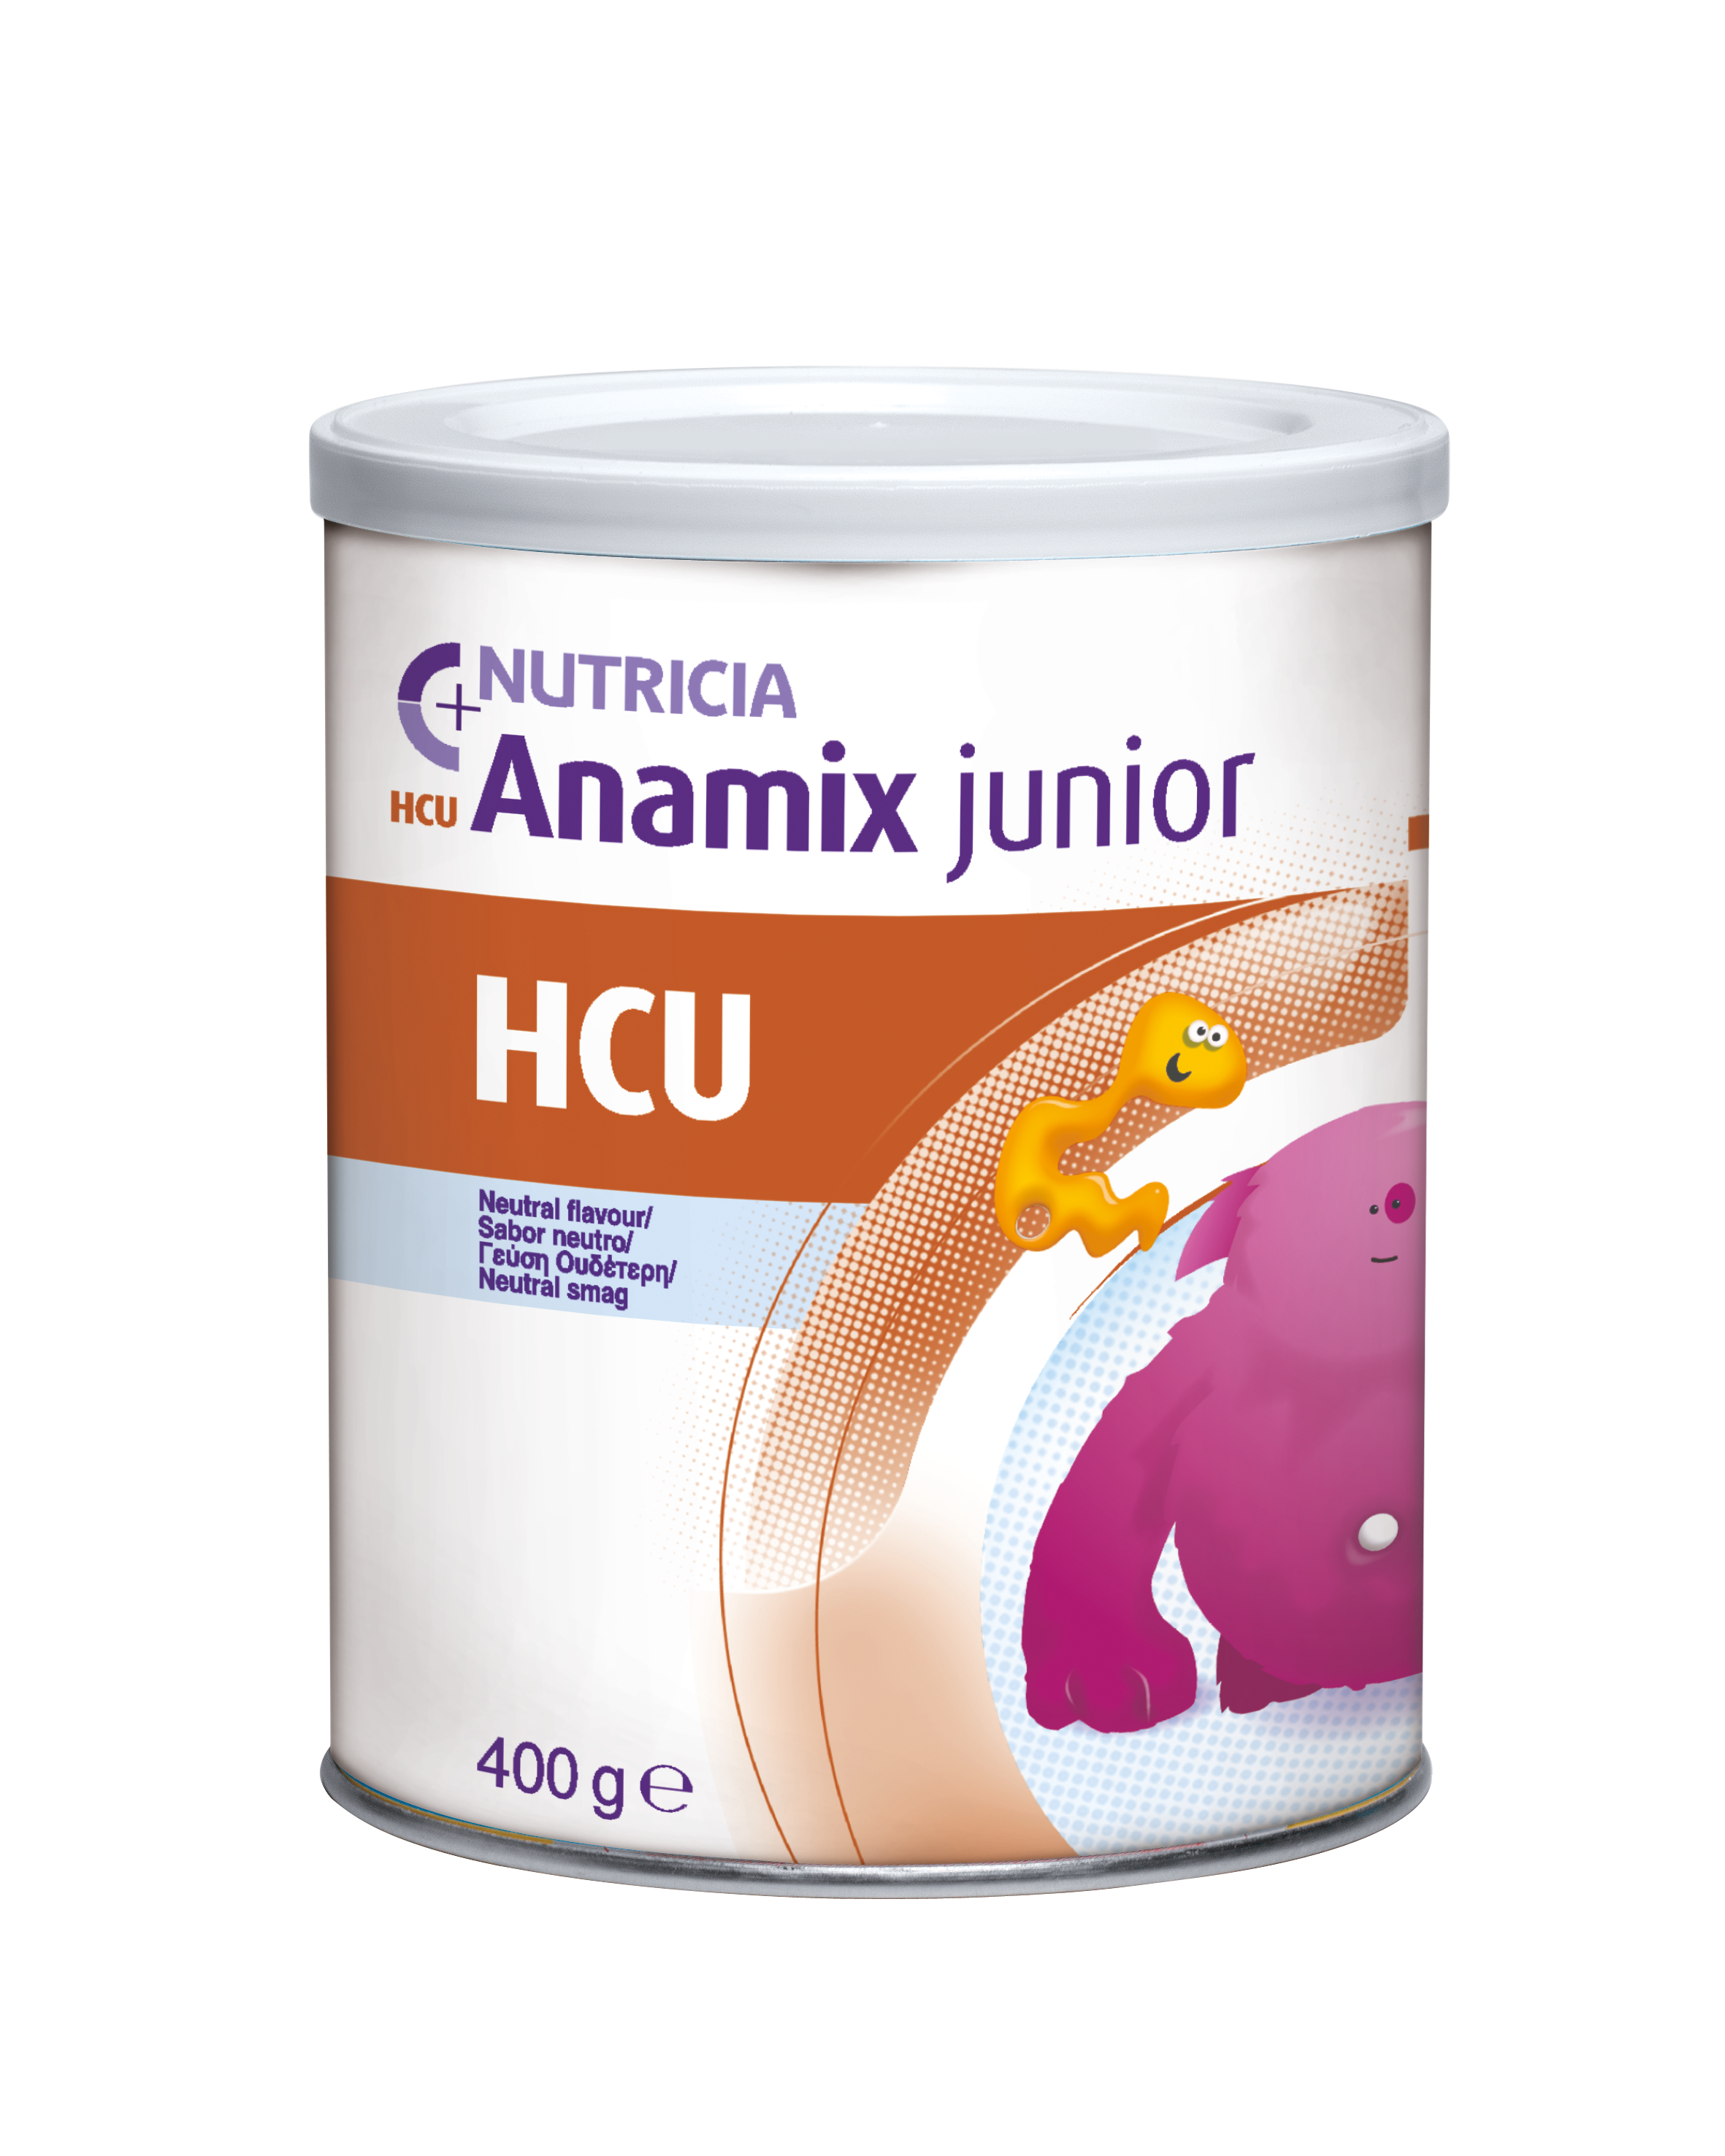 HCU Anamix Junior